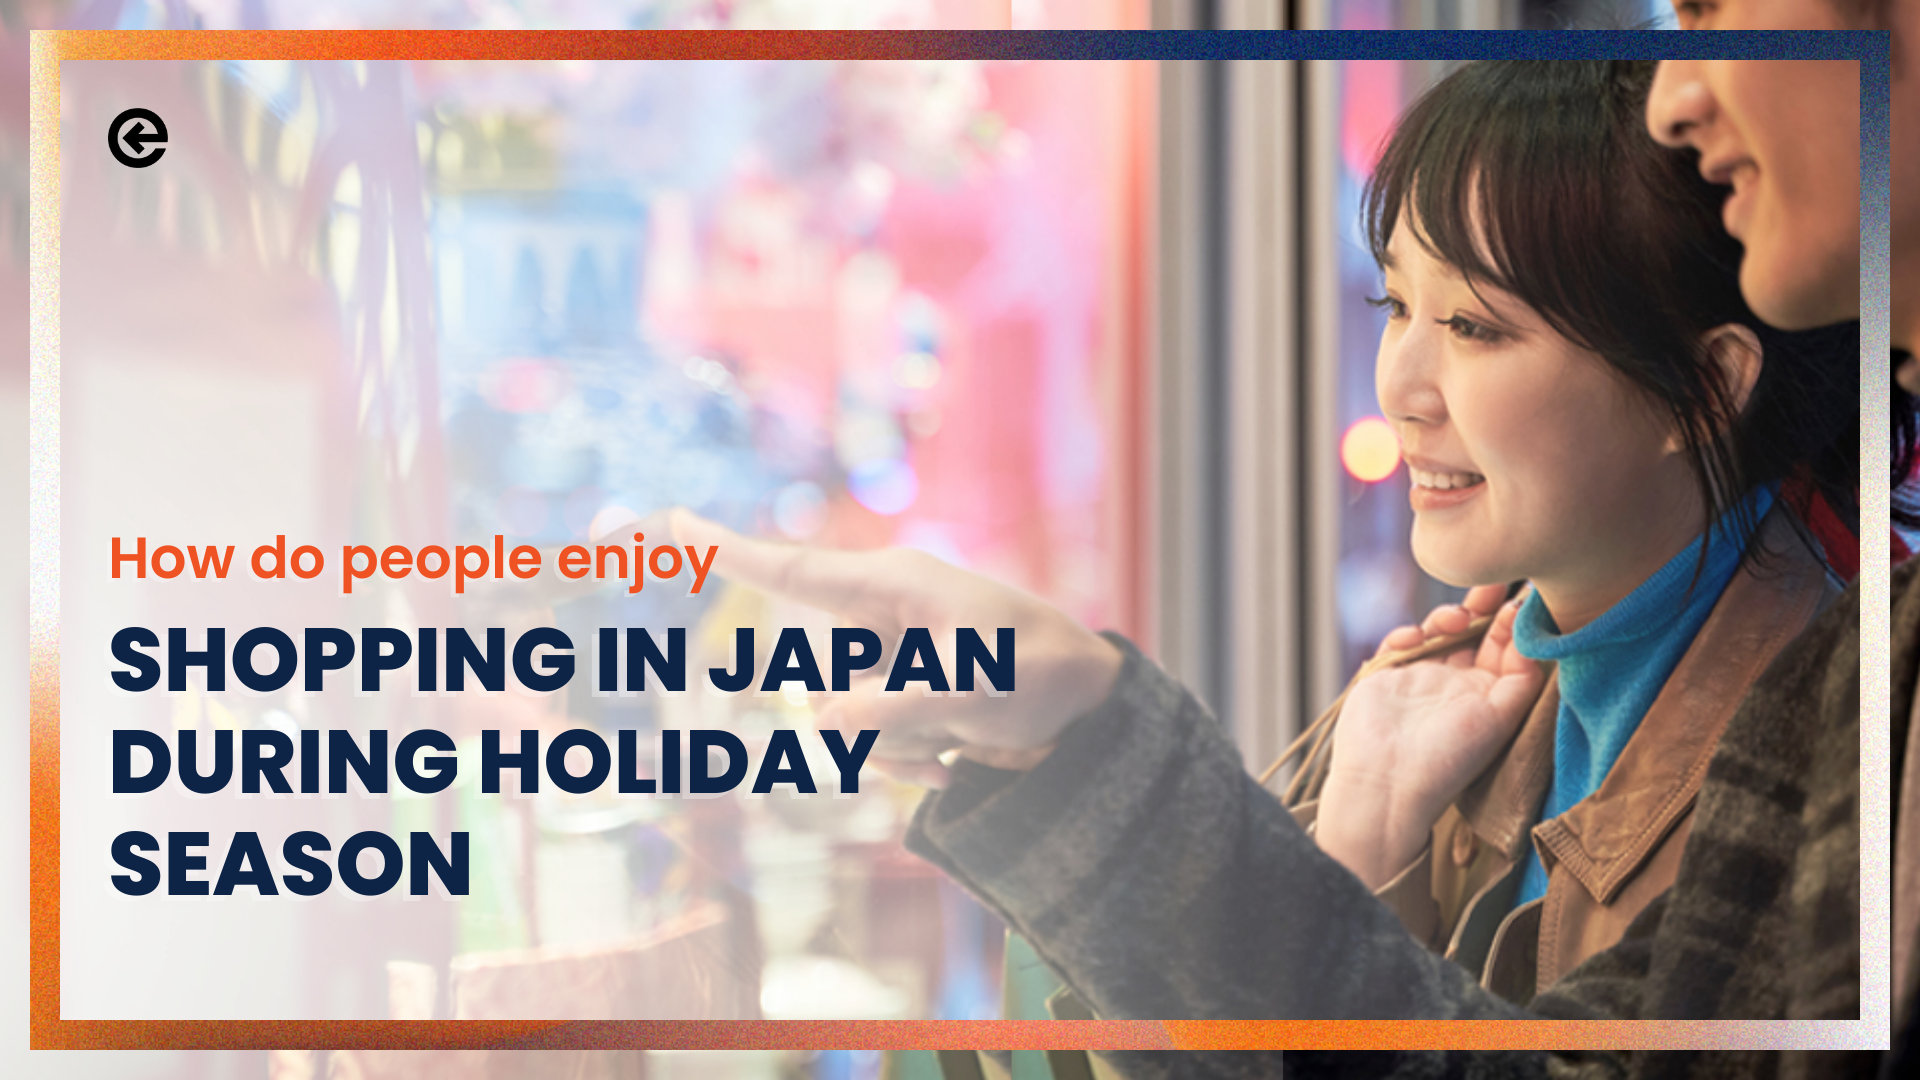 Wie genießen die Menschen das Einkaufen in Japan während der Ferienzeit?